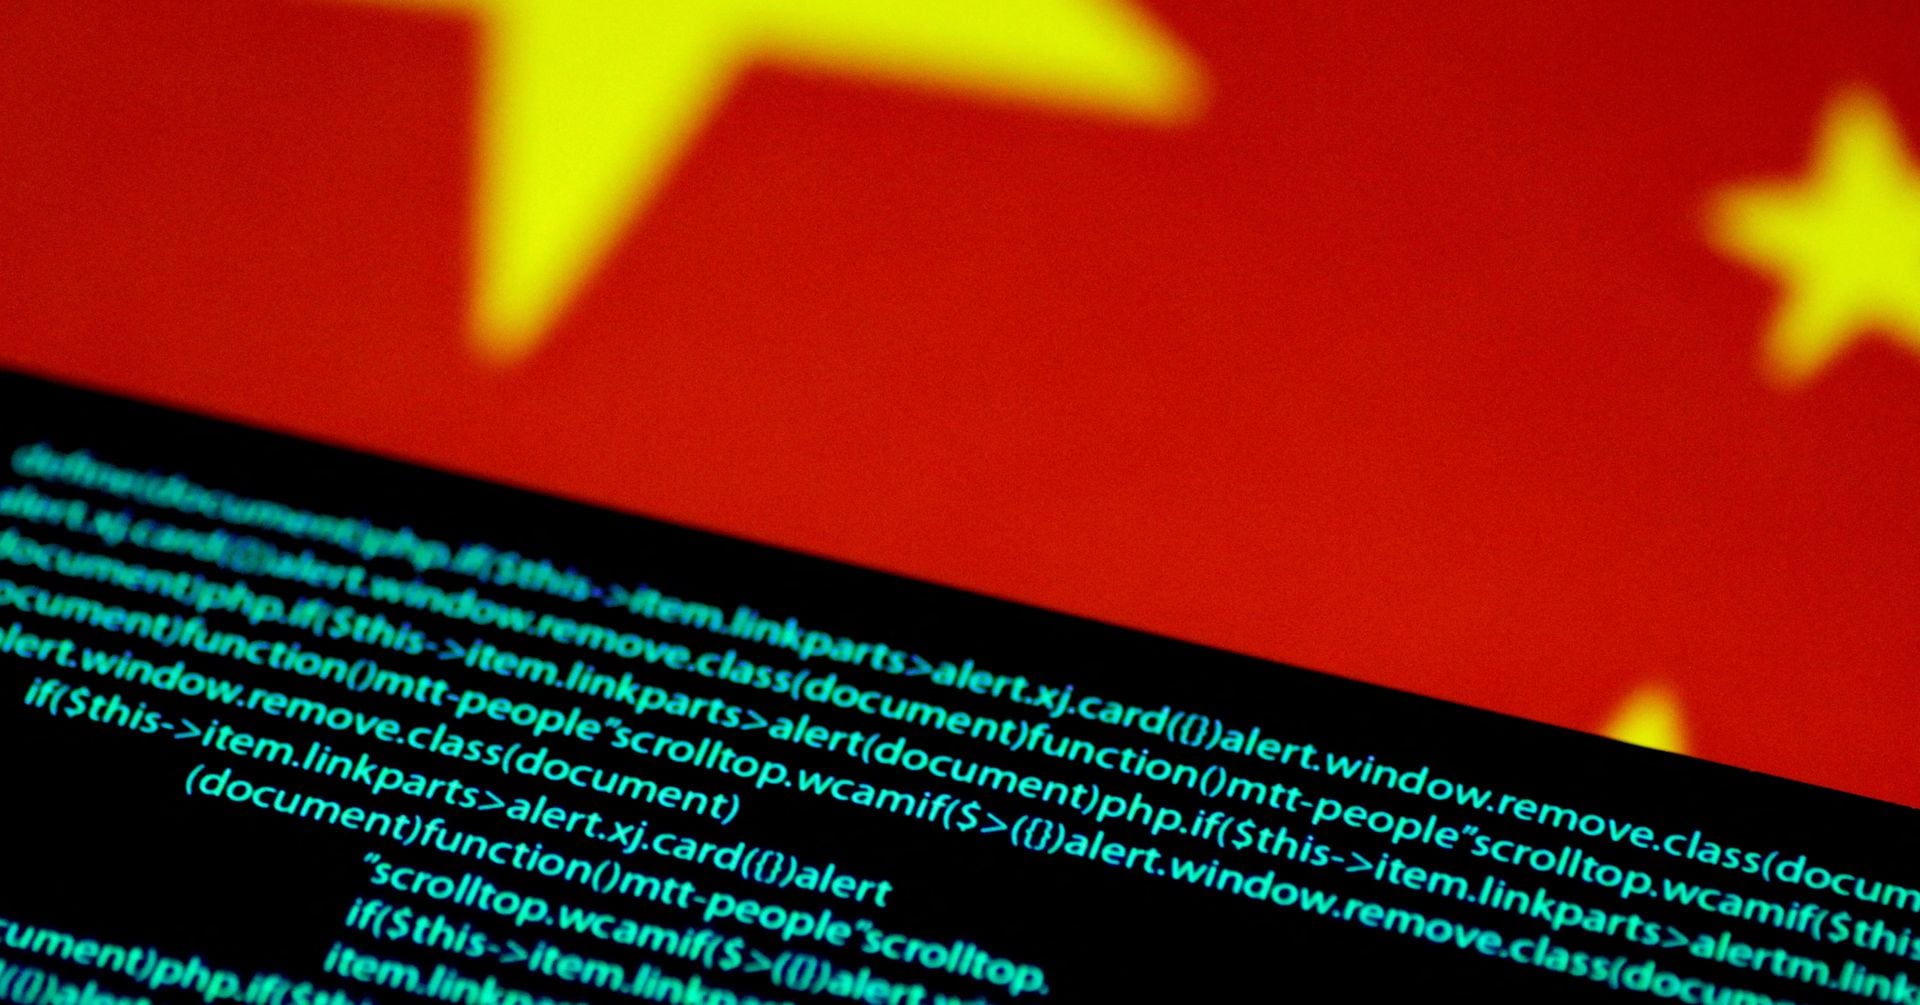 米が中国ハッキング活動阻止、台湾危機に備え重要インフラ標的か